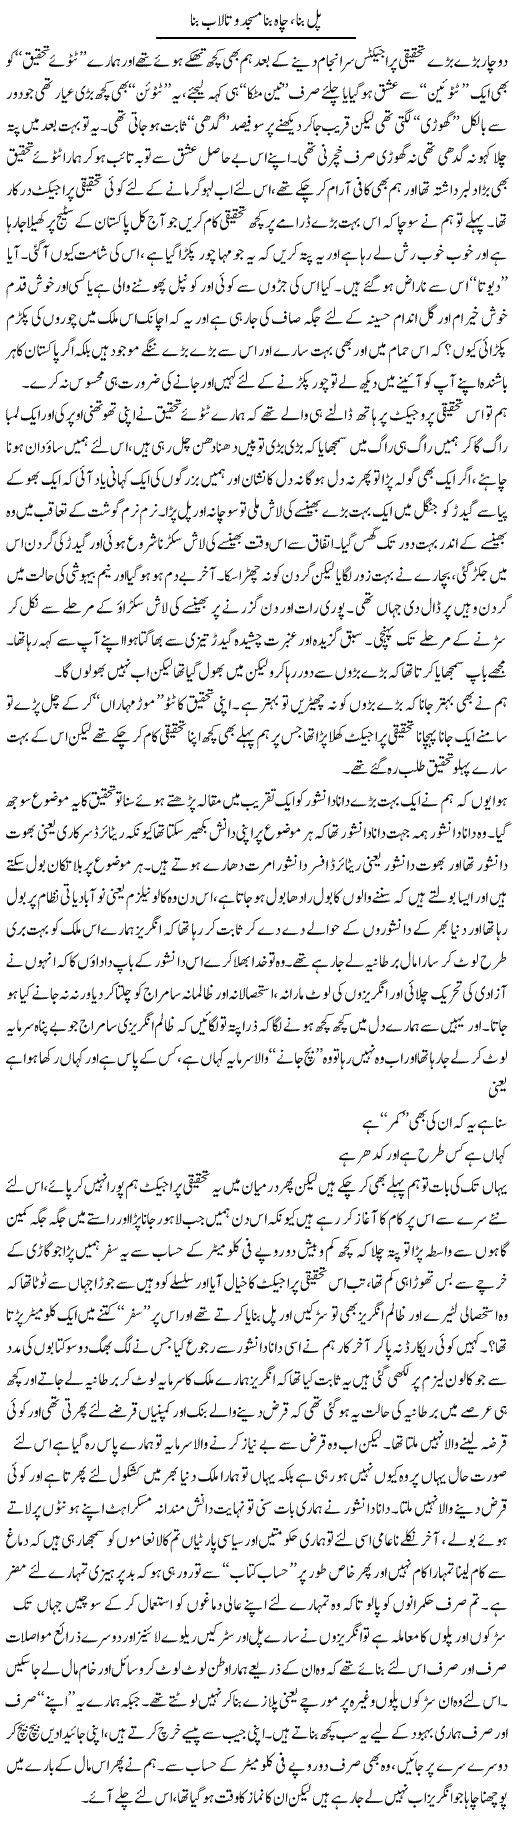 Pul Bana, Chaah Bana Masjid O Talaab Bana | Saad Ullah Jan Barq | Daily Urdu Columns